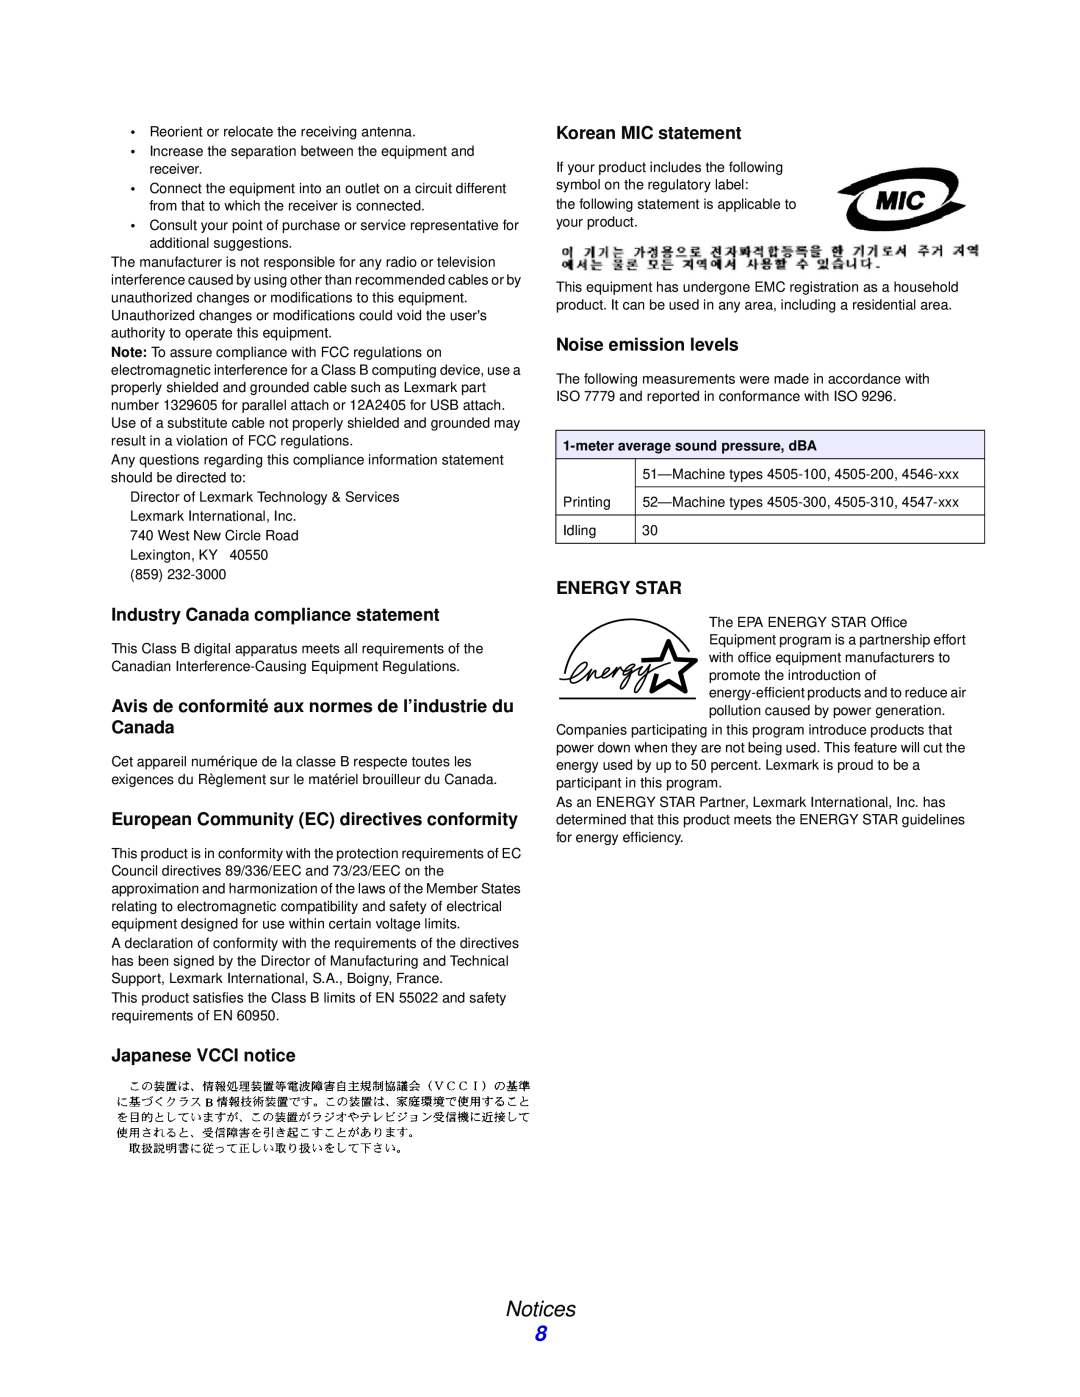 Lexmark 230, 232 Notices, Industry Canada compliance statement, Avis de conformité aux normes de l’industrie du Canada 